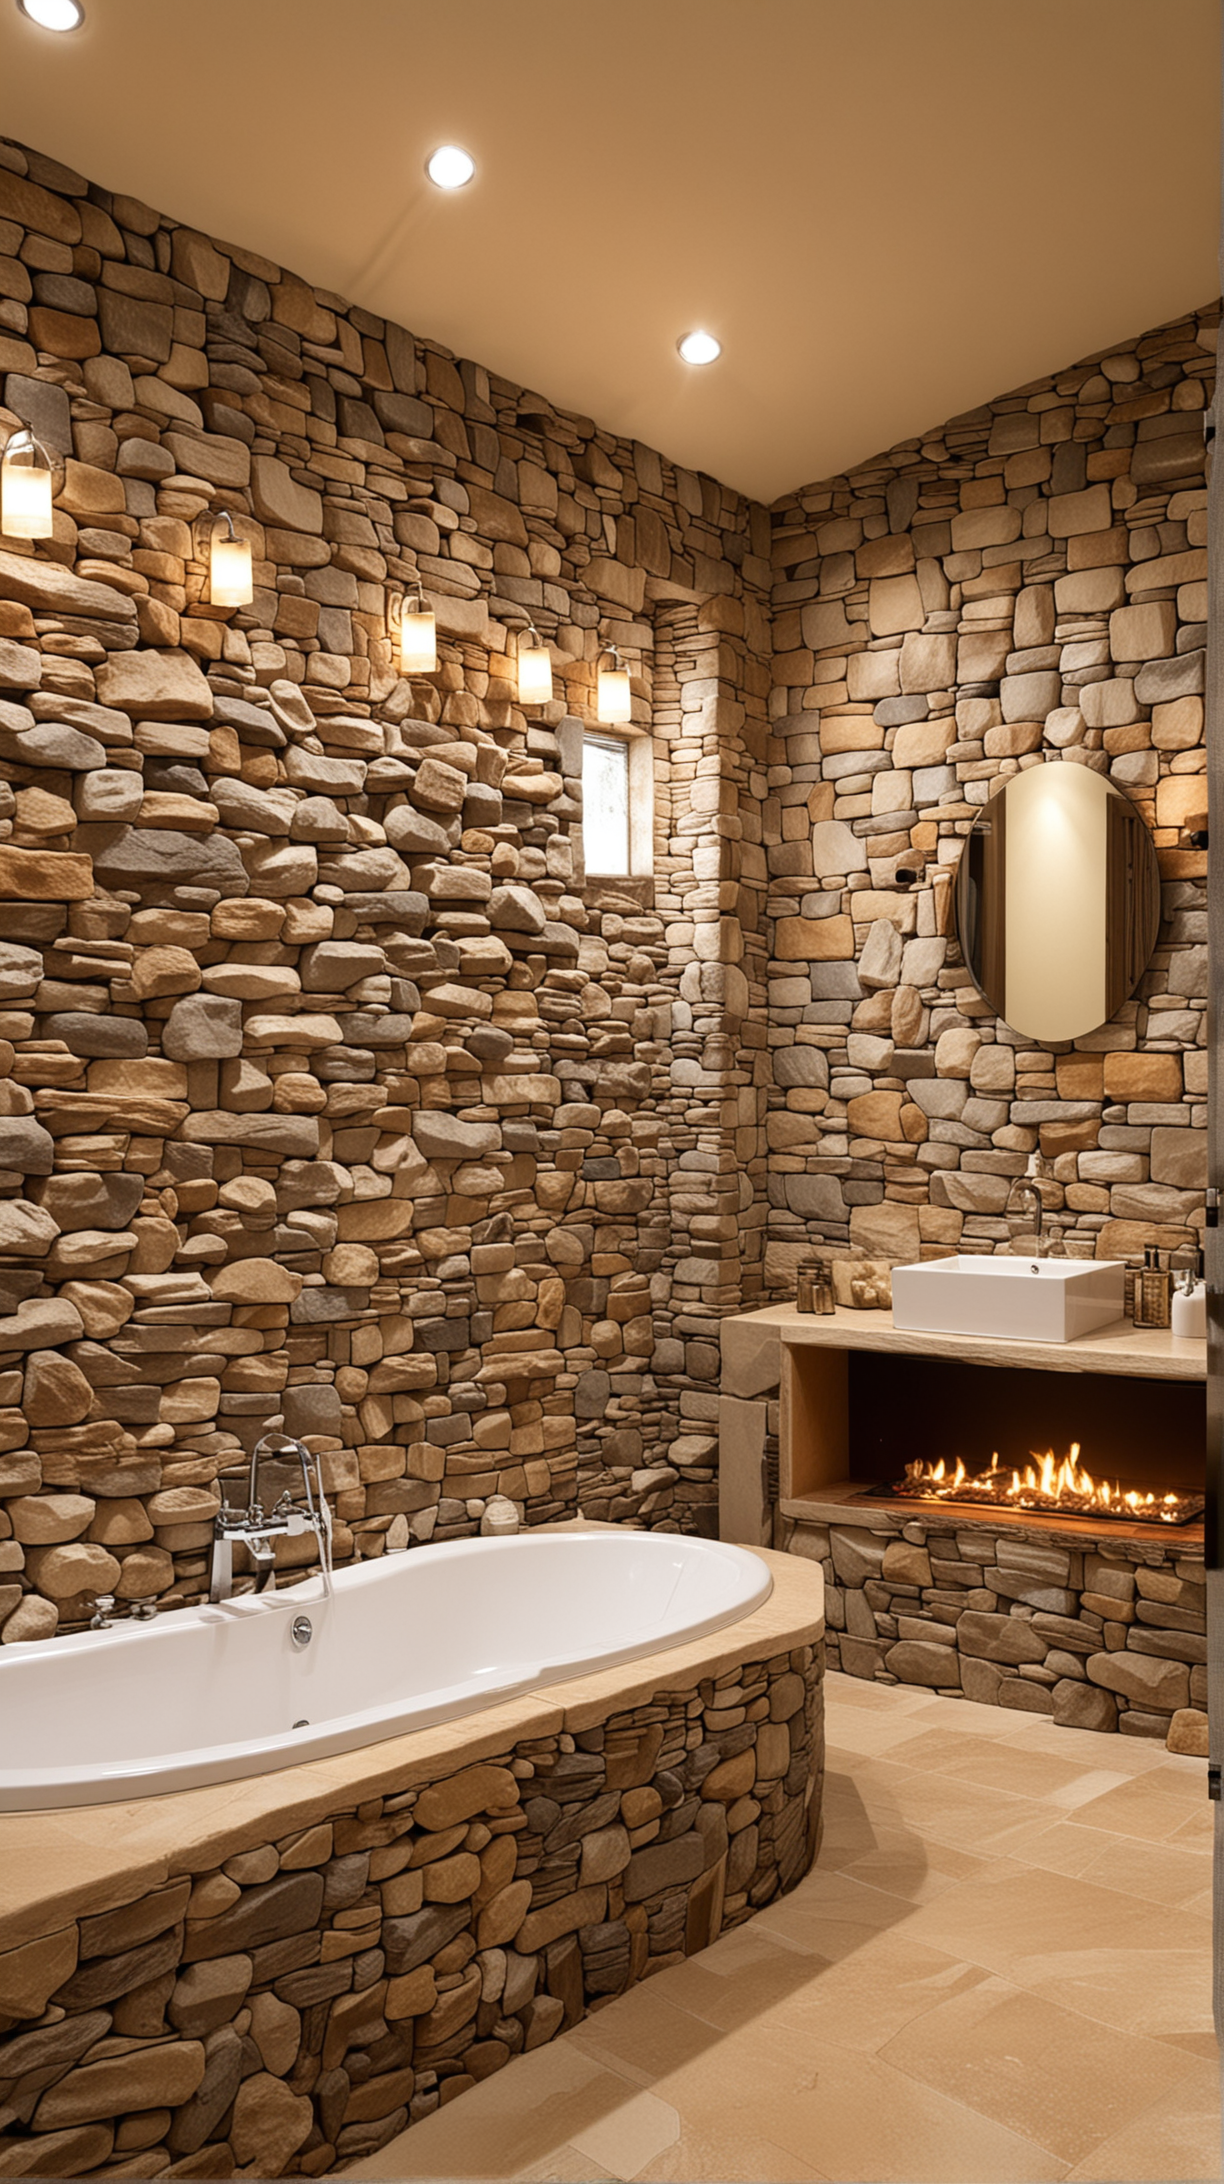 Salle de bain chaleureuse avec un foyer en pierre